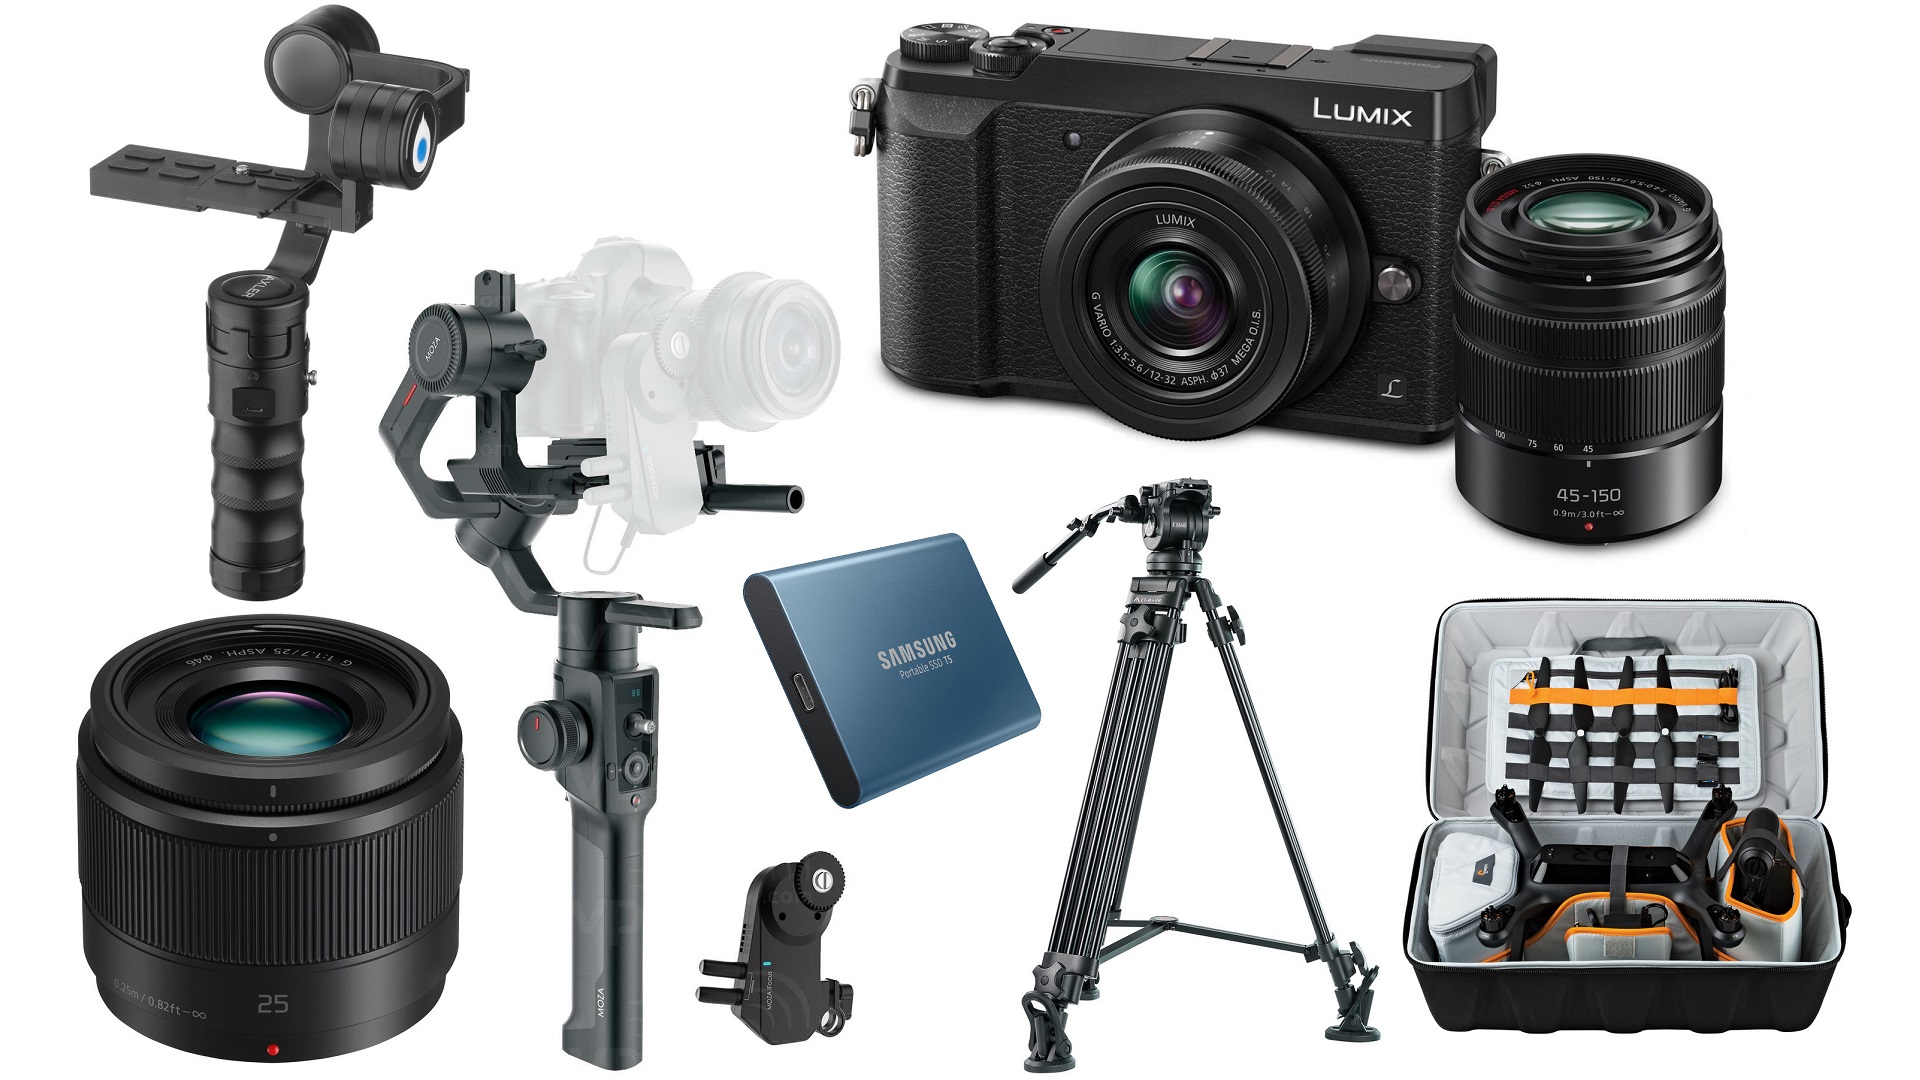 Las 10 mejores ofertas para cineastas de esta semana – Panasonic GX85, trípodes, gimbals, SSDs y más